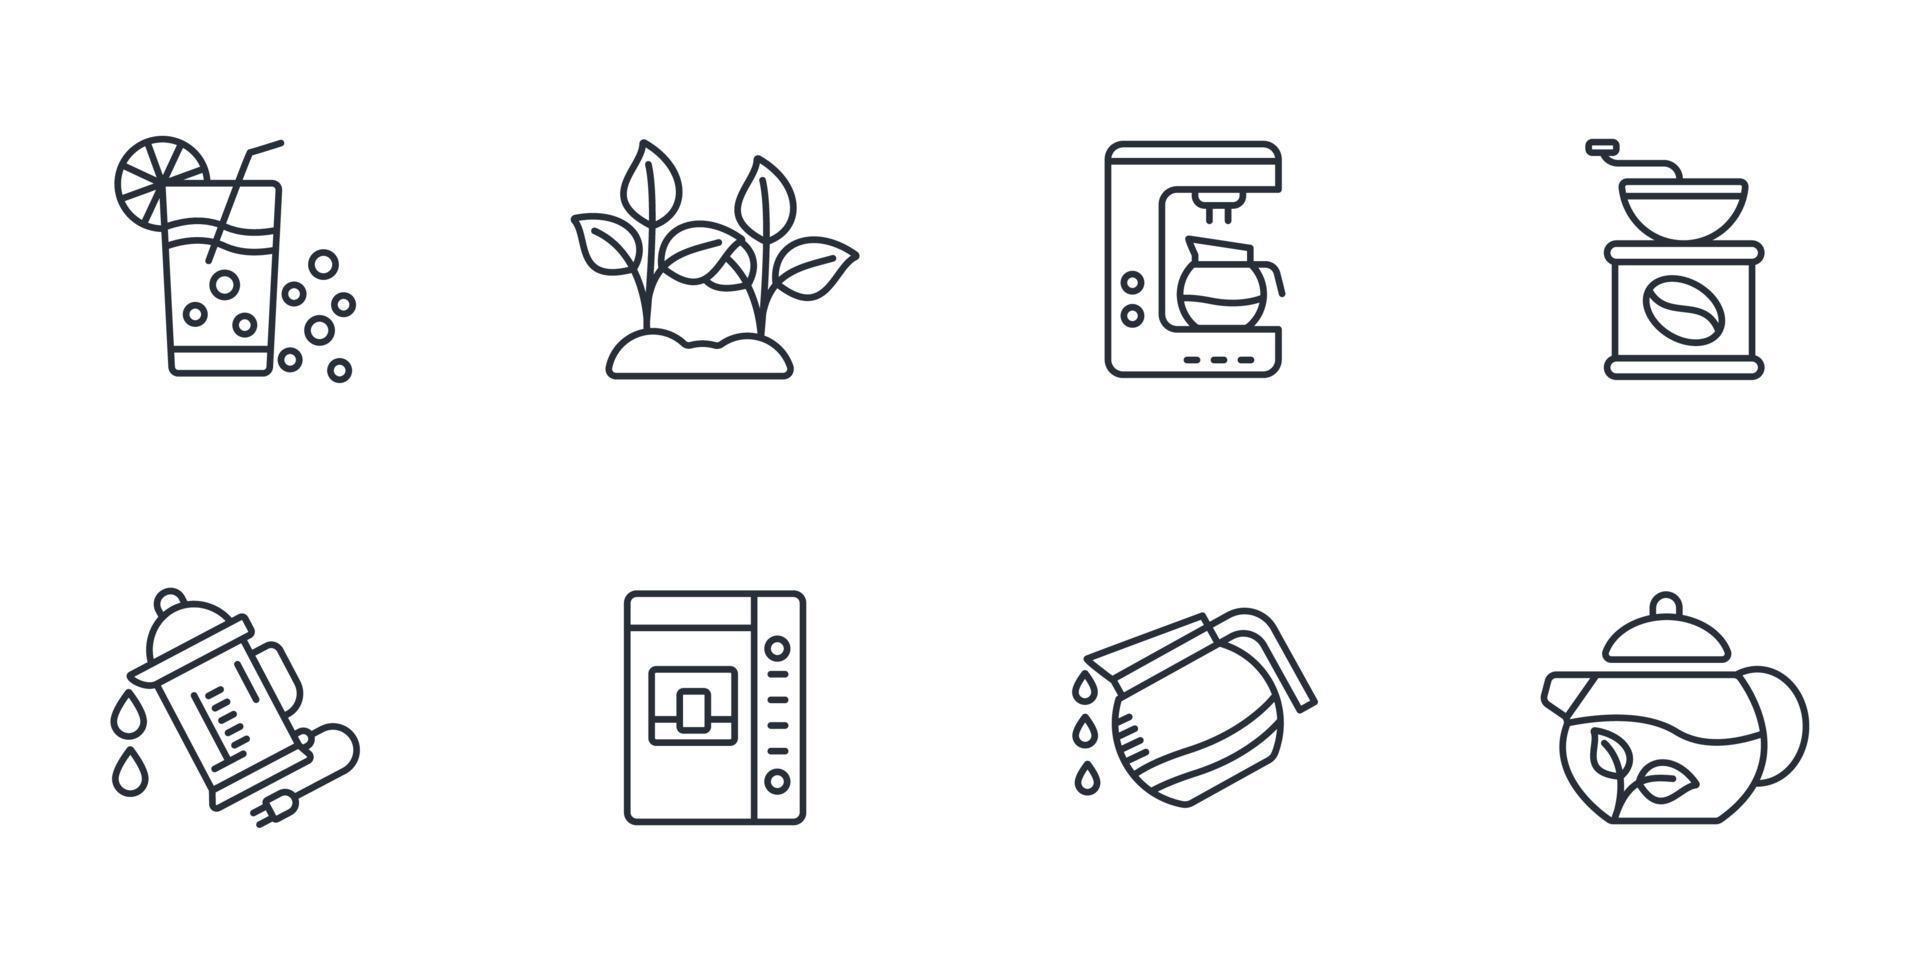 te kaffe affär ikoner uppsättning . te kaffe affär packa symbol vektor element för infographic webb